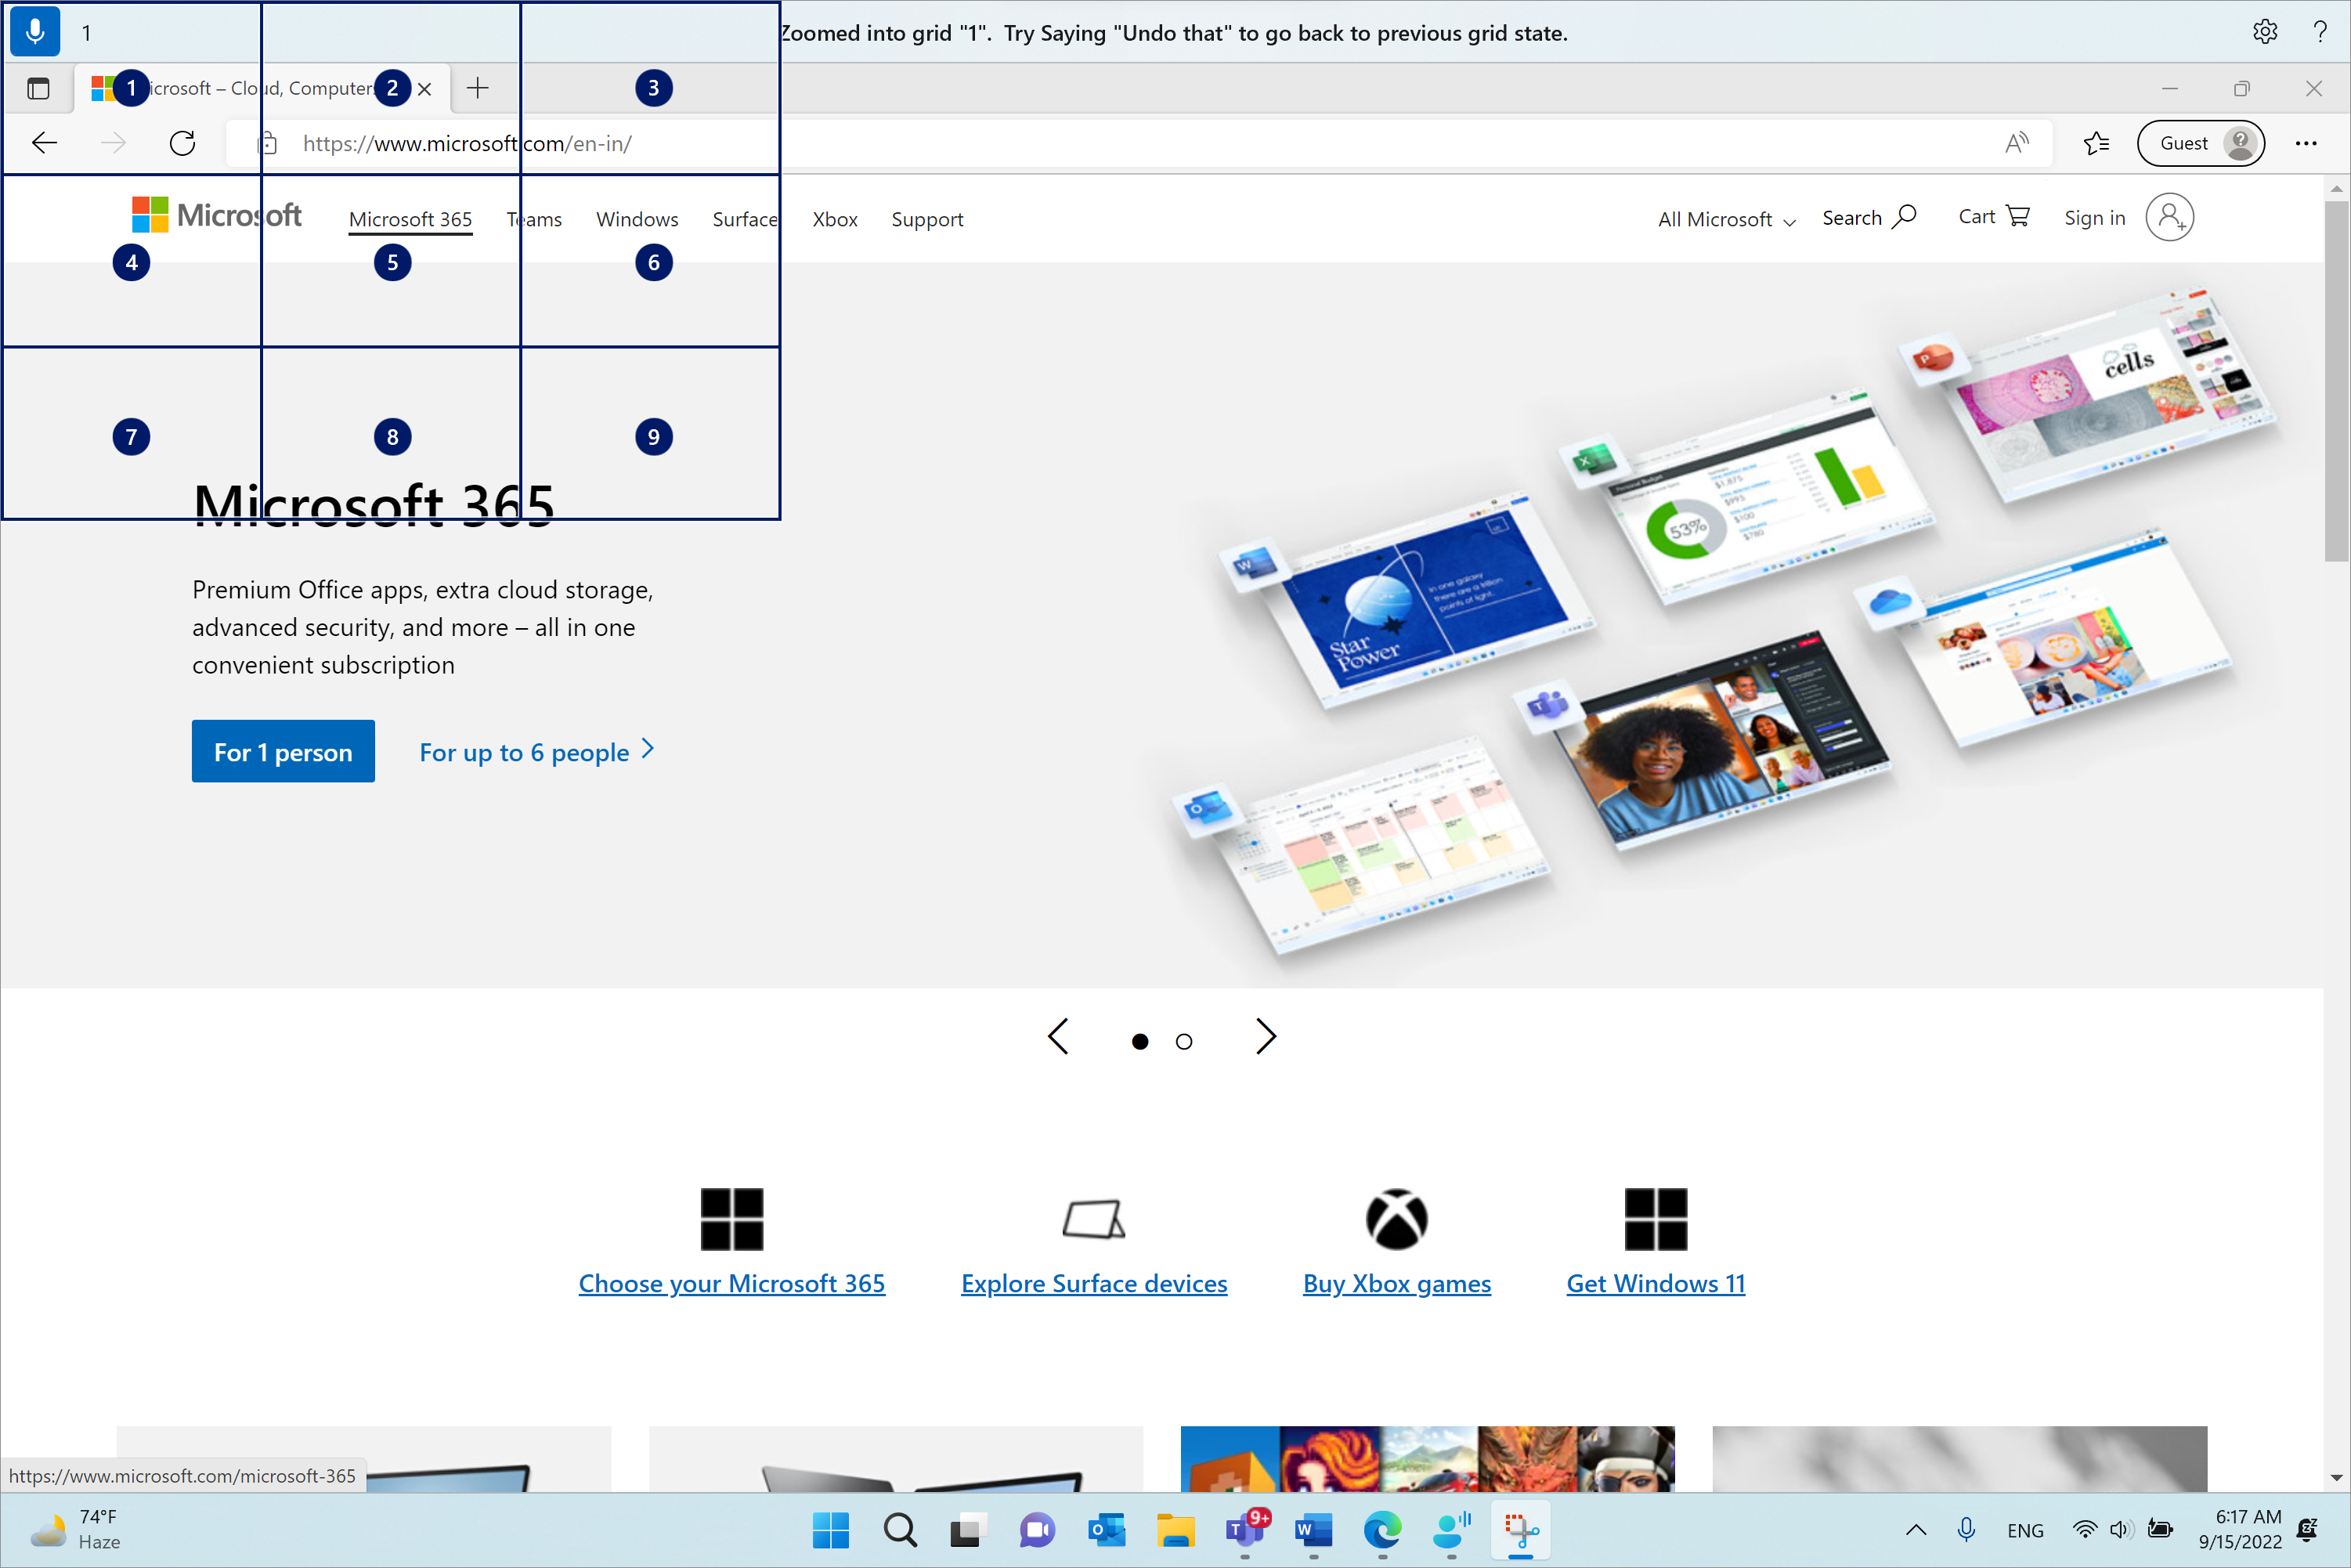 Microsoft Edge otvoren je i na Microsoft.com stranici. Traka za pristup glasom nalazi se na vrhu i u stanju slušanja. Izdana naredba je "1", a prikazane povratne informacije su "Zumirana u rešetku "1". Pokušajte izgovoriti "poništi to" da biste se vratili na prethodno stanje rešetke."